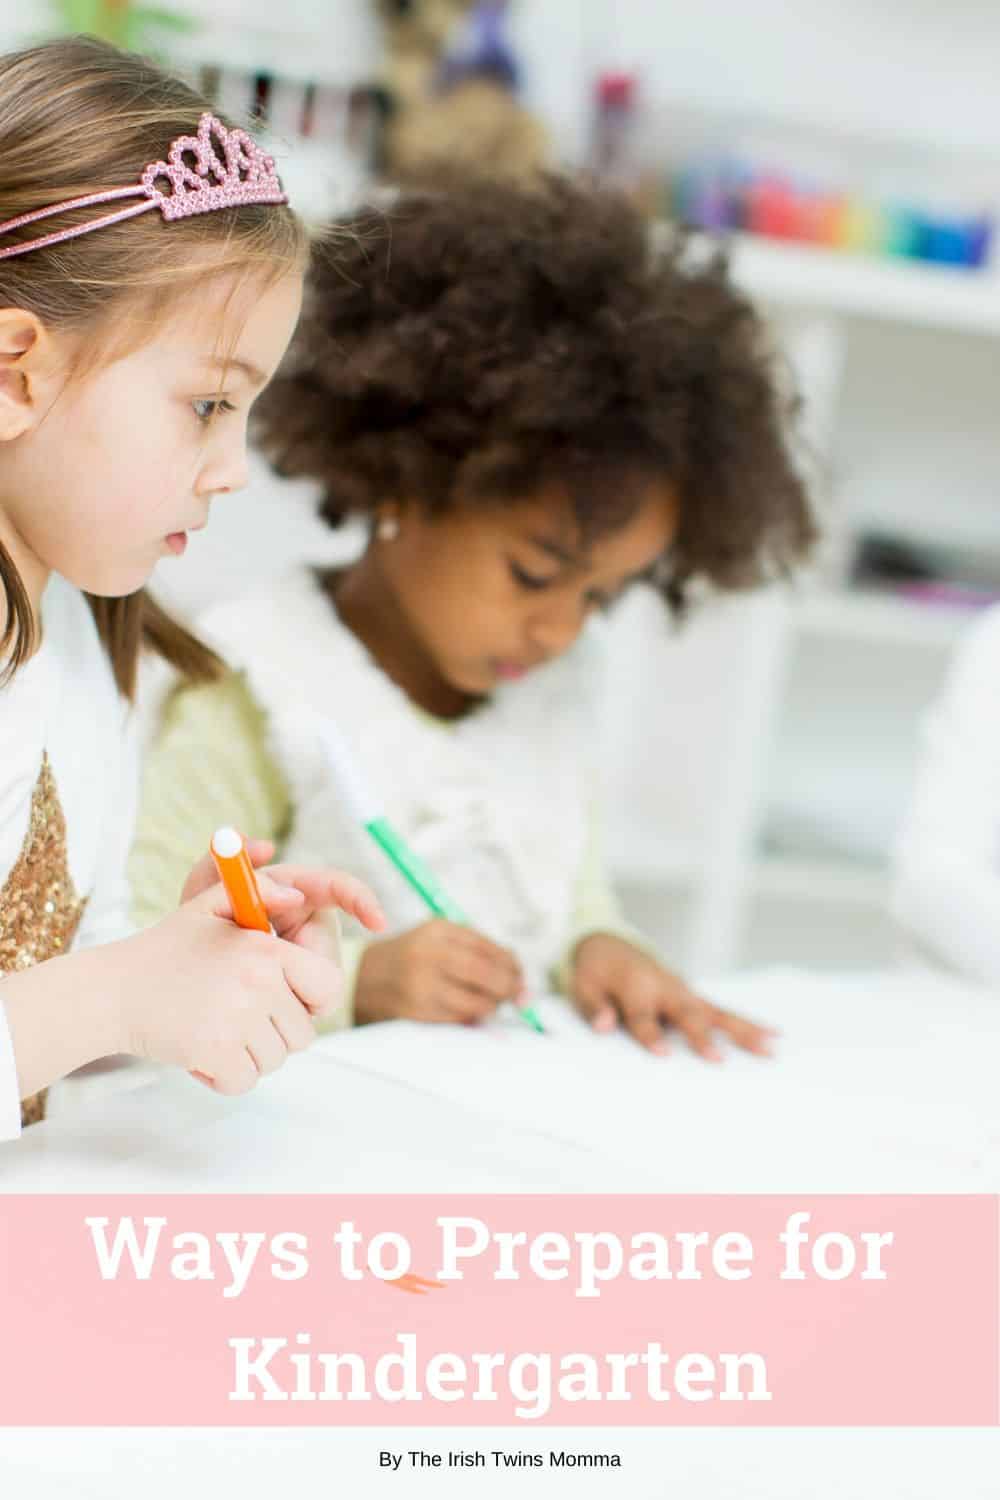 How to prepare for kindergarten